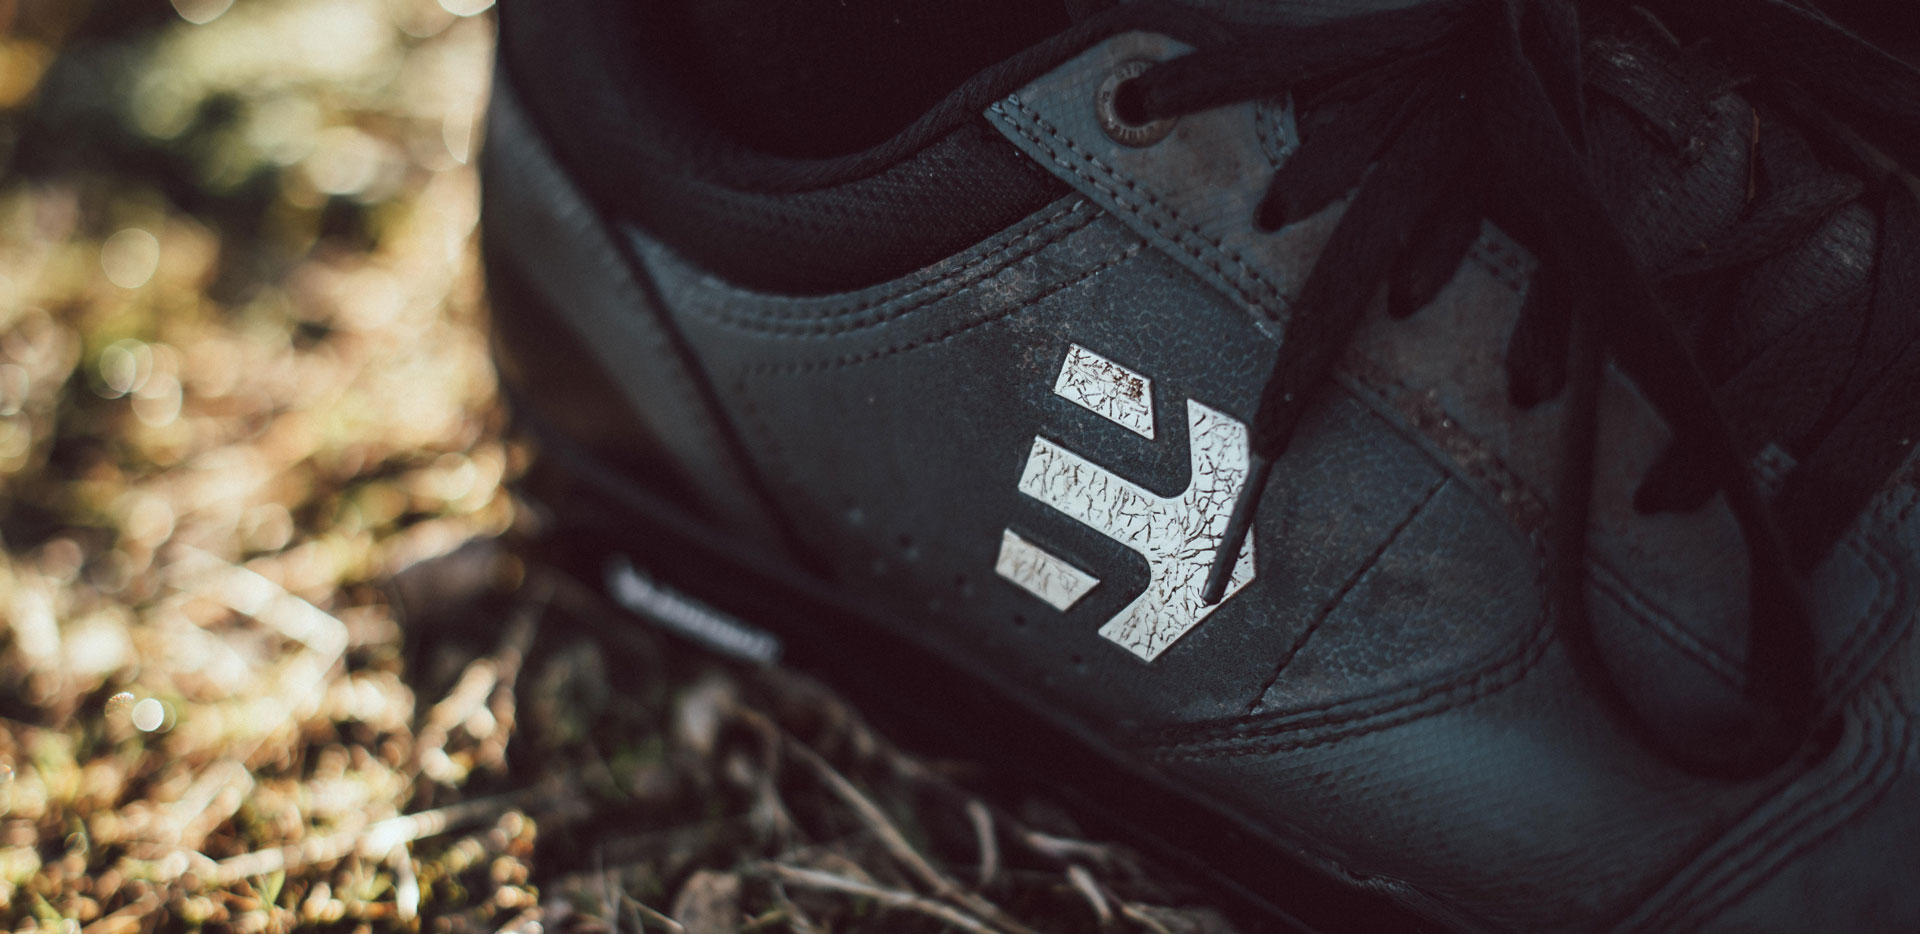 Etnies Camber Crank Shoe Close Up